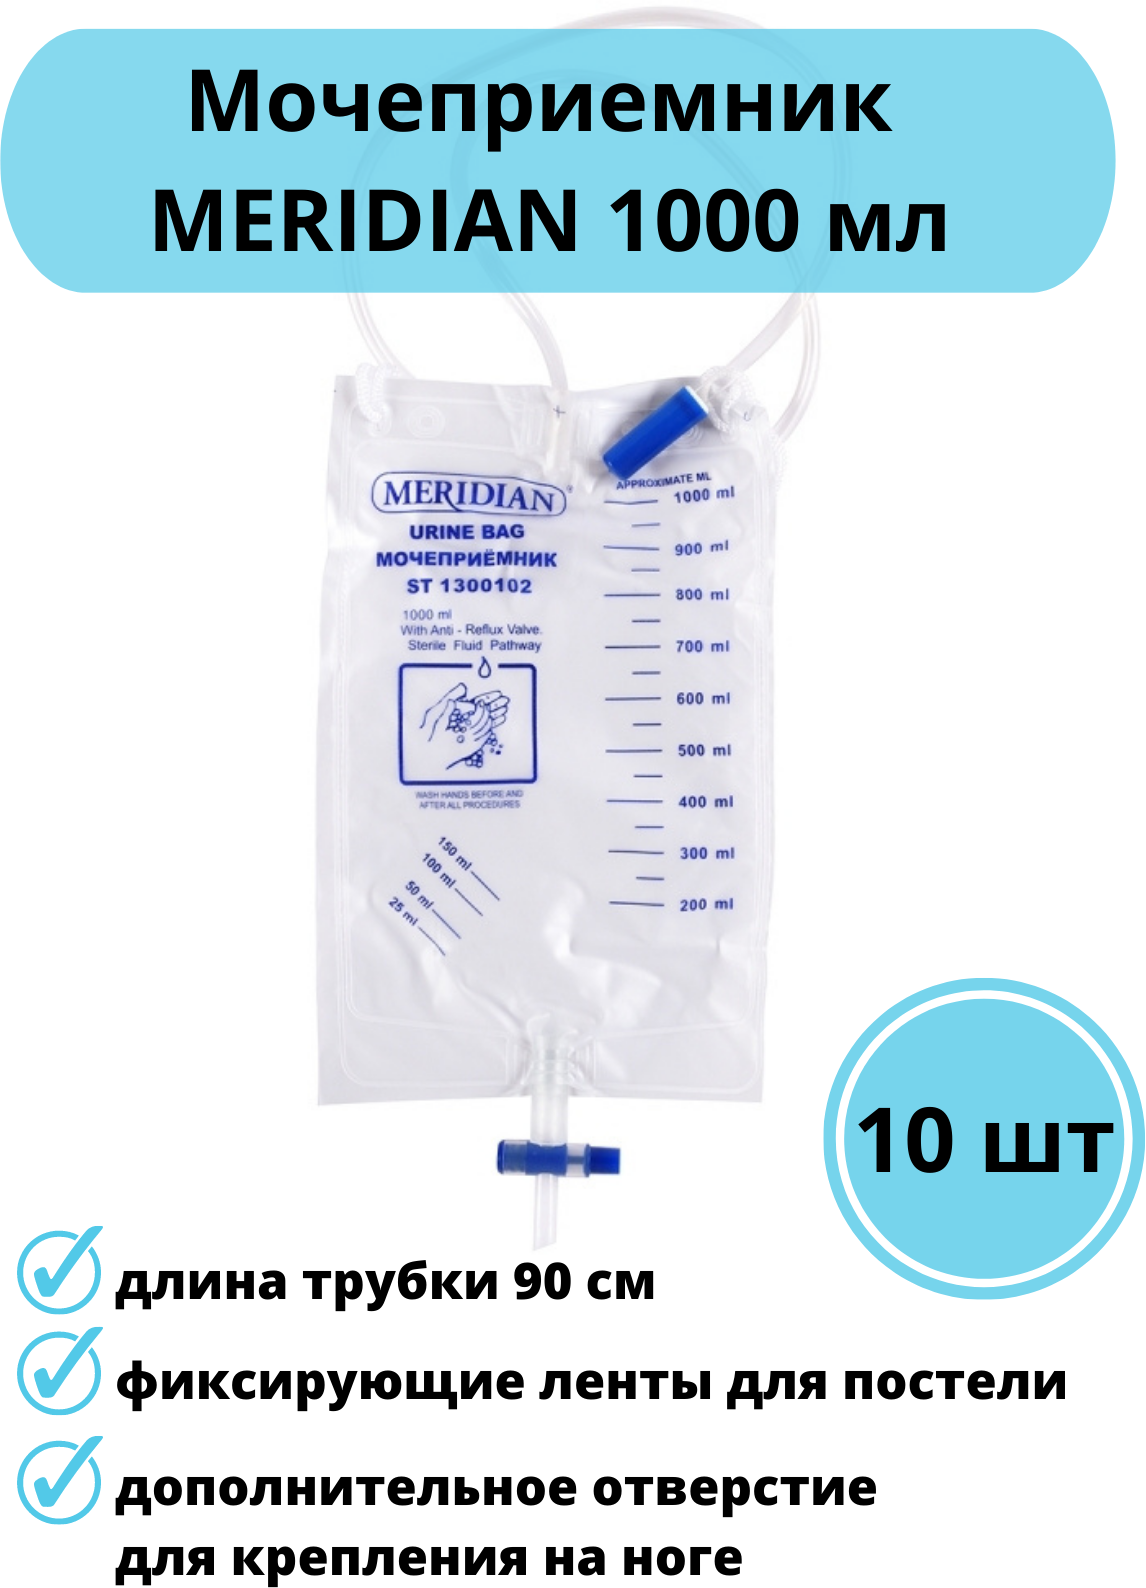 Мочеприемник стандартный Meridian 1000 мл (10 шт.)